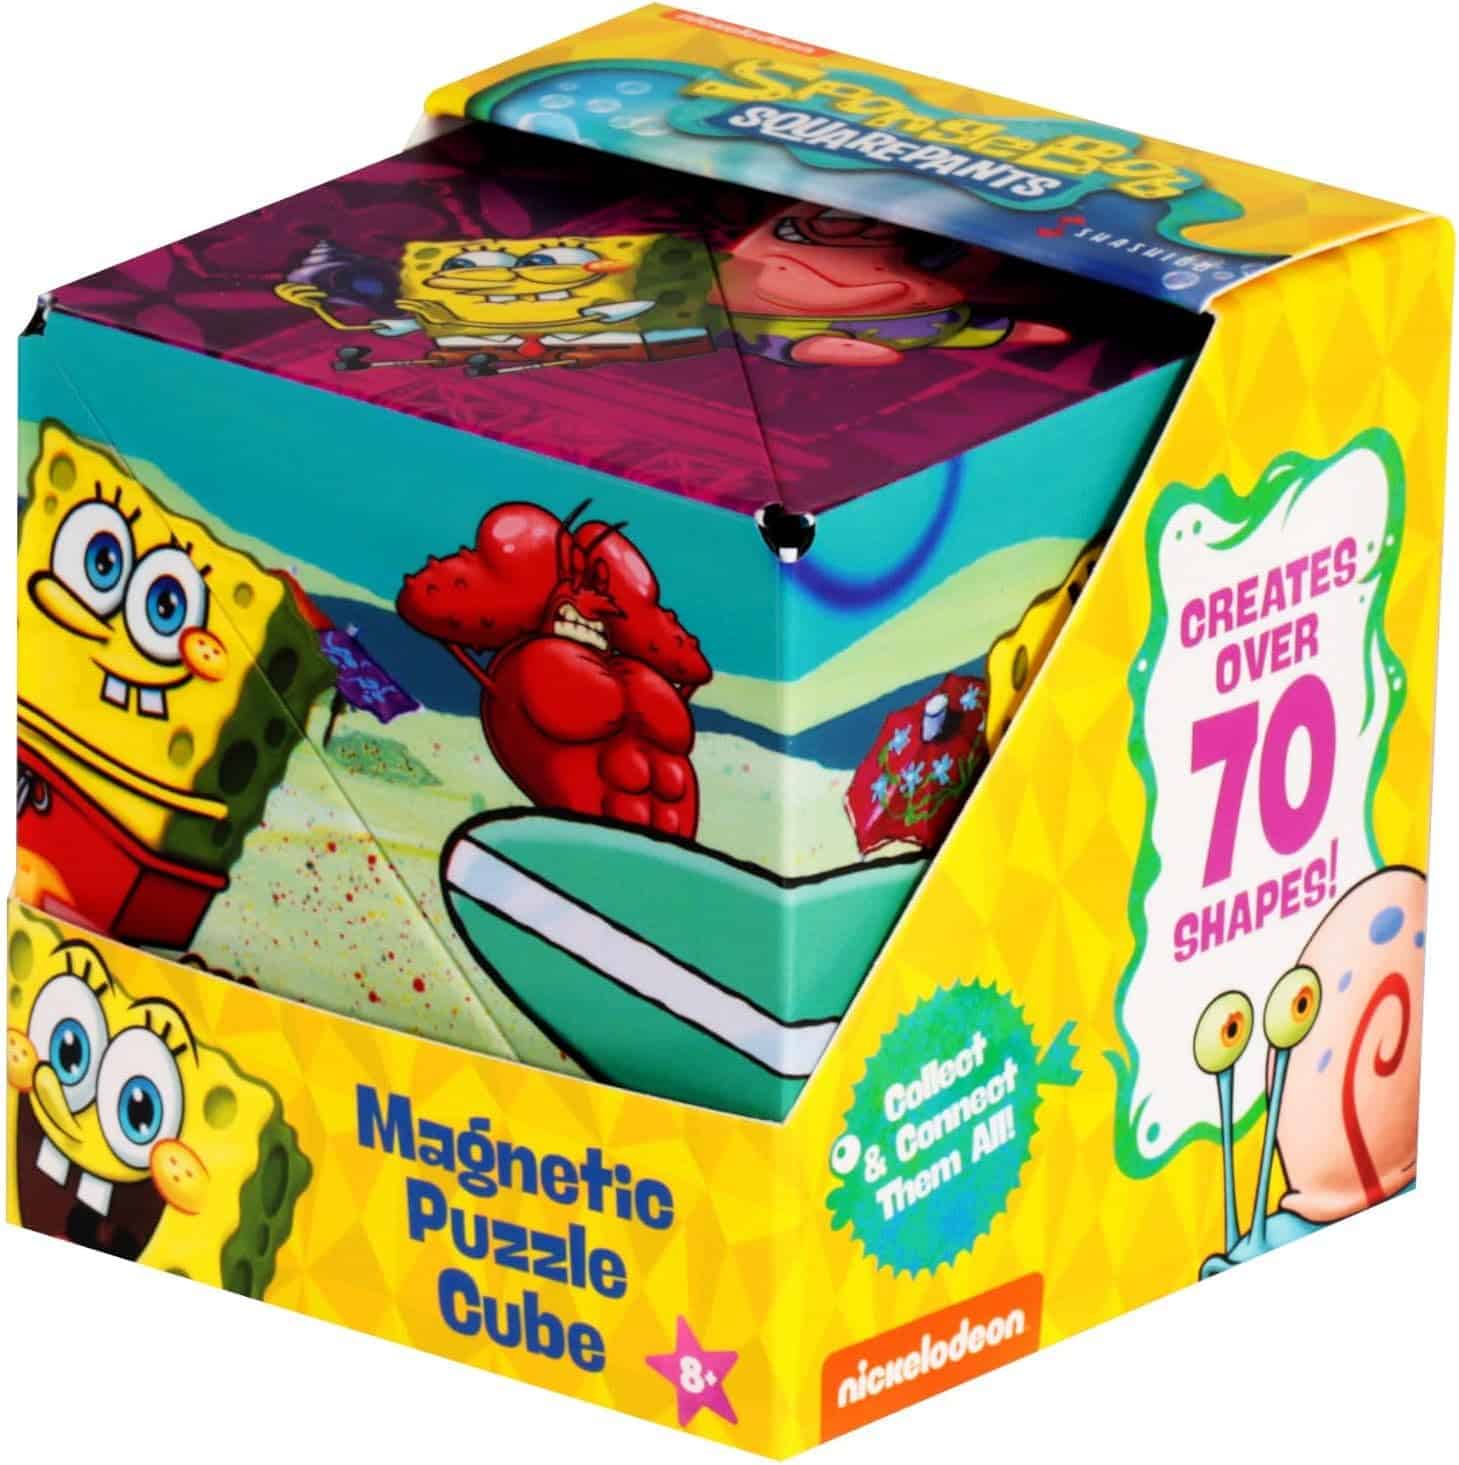 Spongebob Puzzle Cube